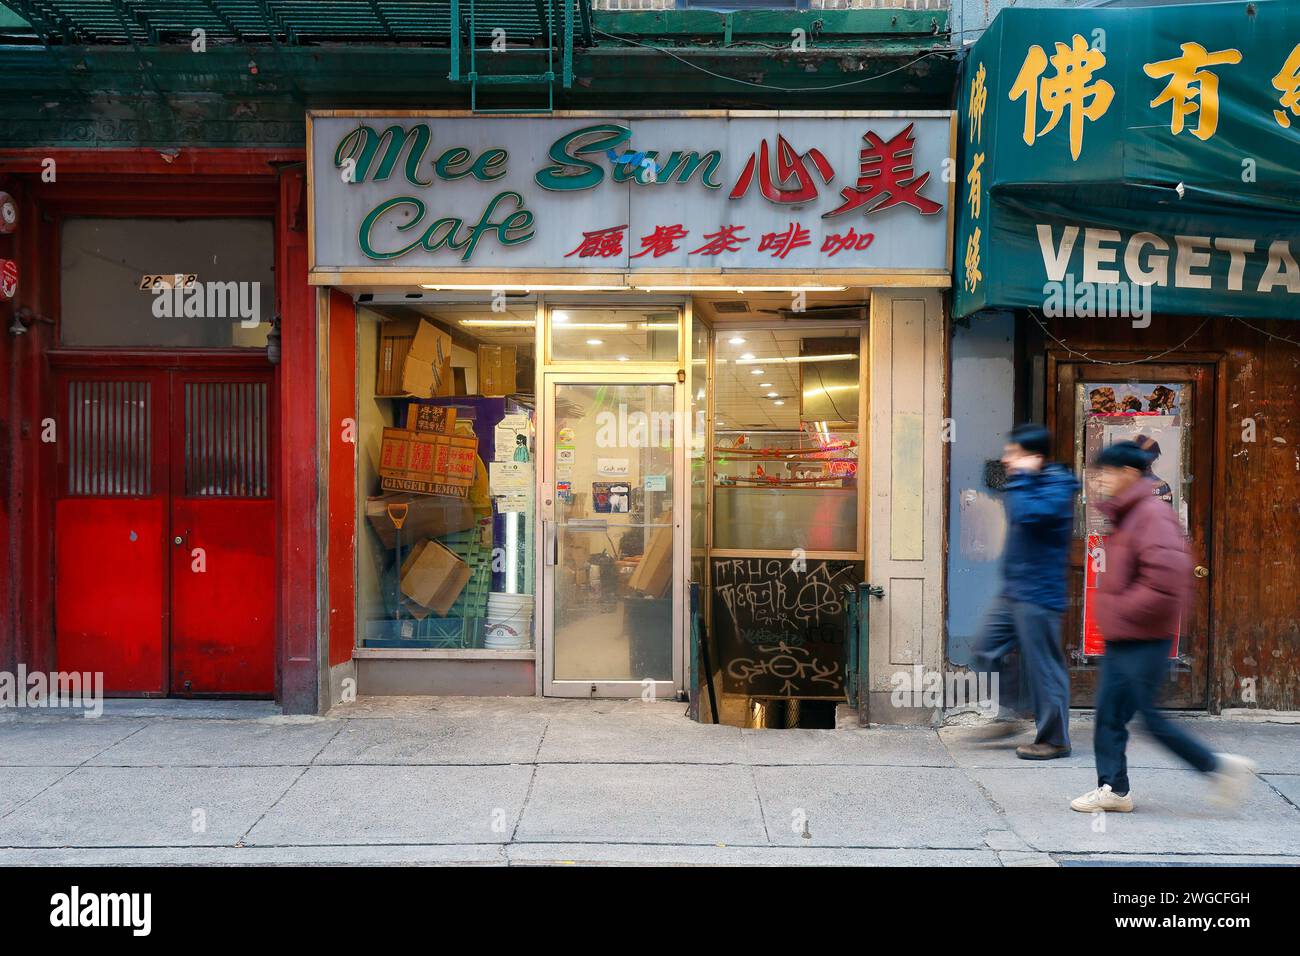 Mee Sum Cafe 美心, 26 Pell St, New York, NY. Vitrine extérieure d'un café dans le quartier chinois de Manhattan. Banque D'Images